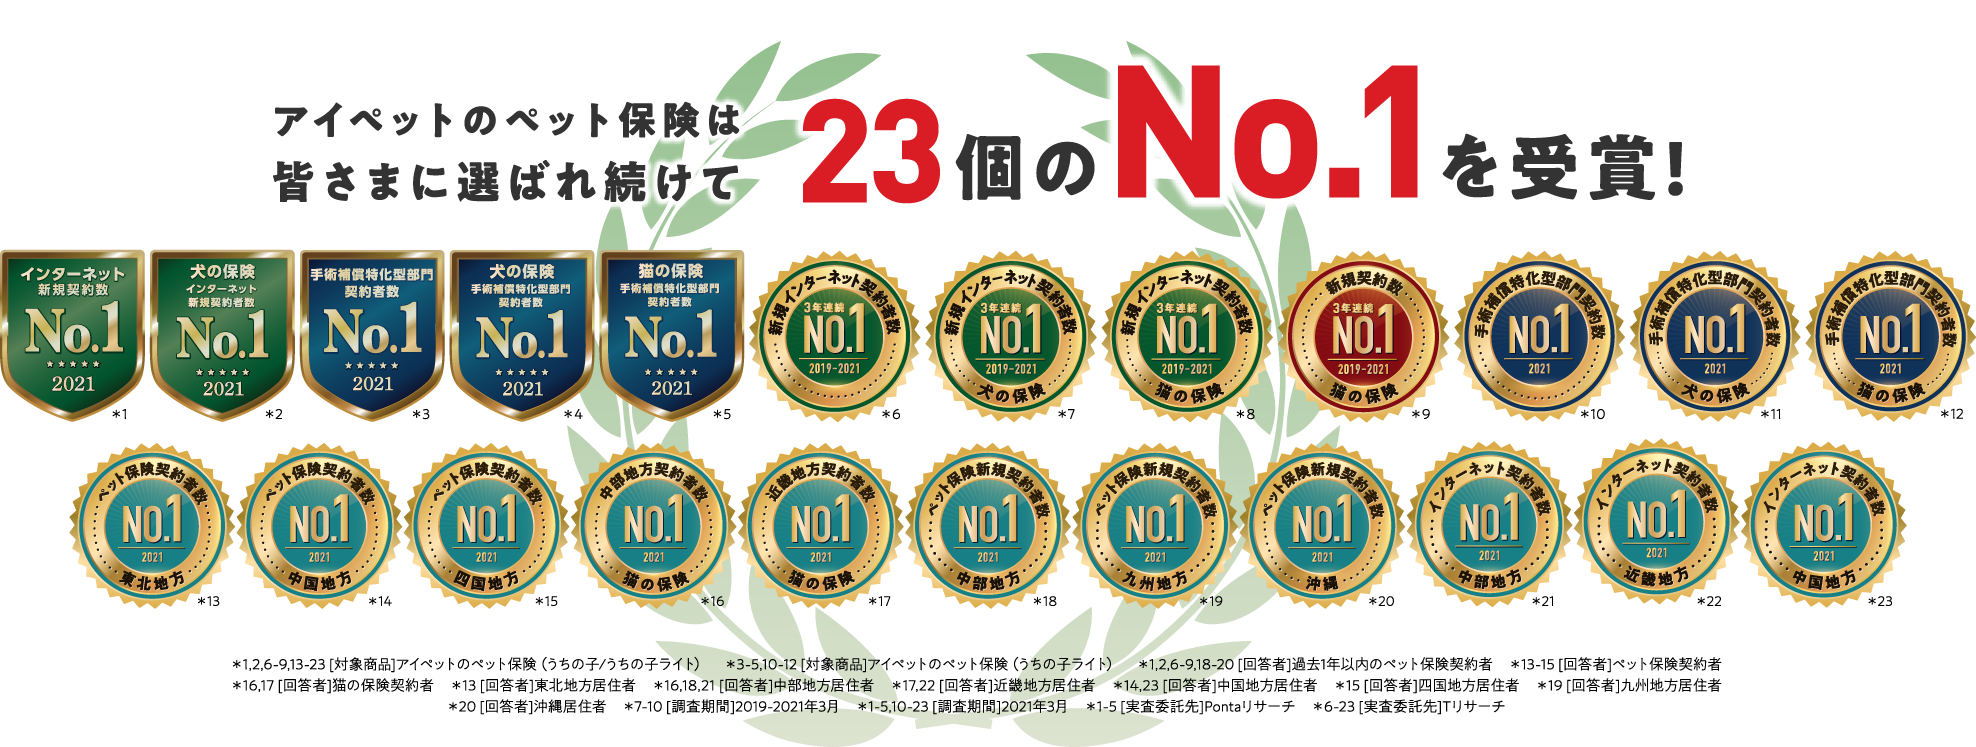 アイペットのペット保険は皆さまに選ばれ続けて23個のNo.1を受賞！